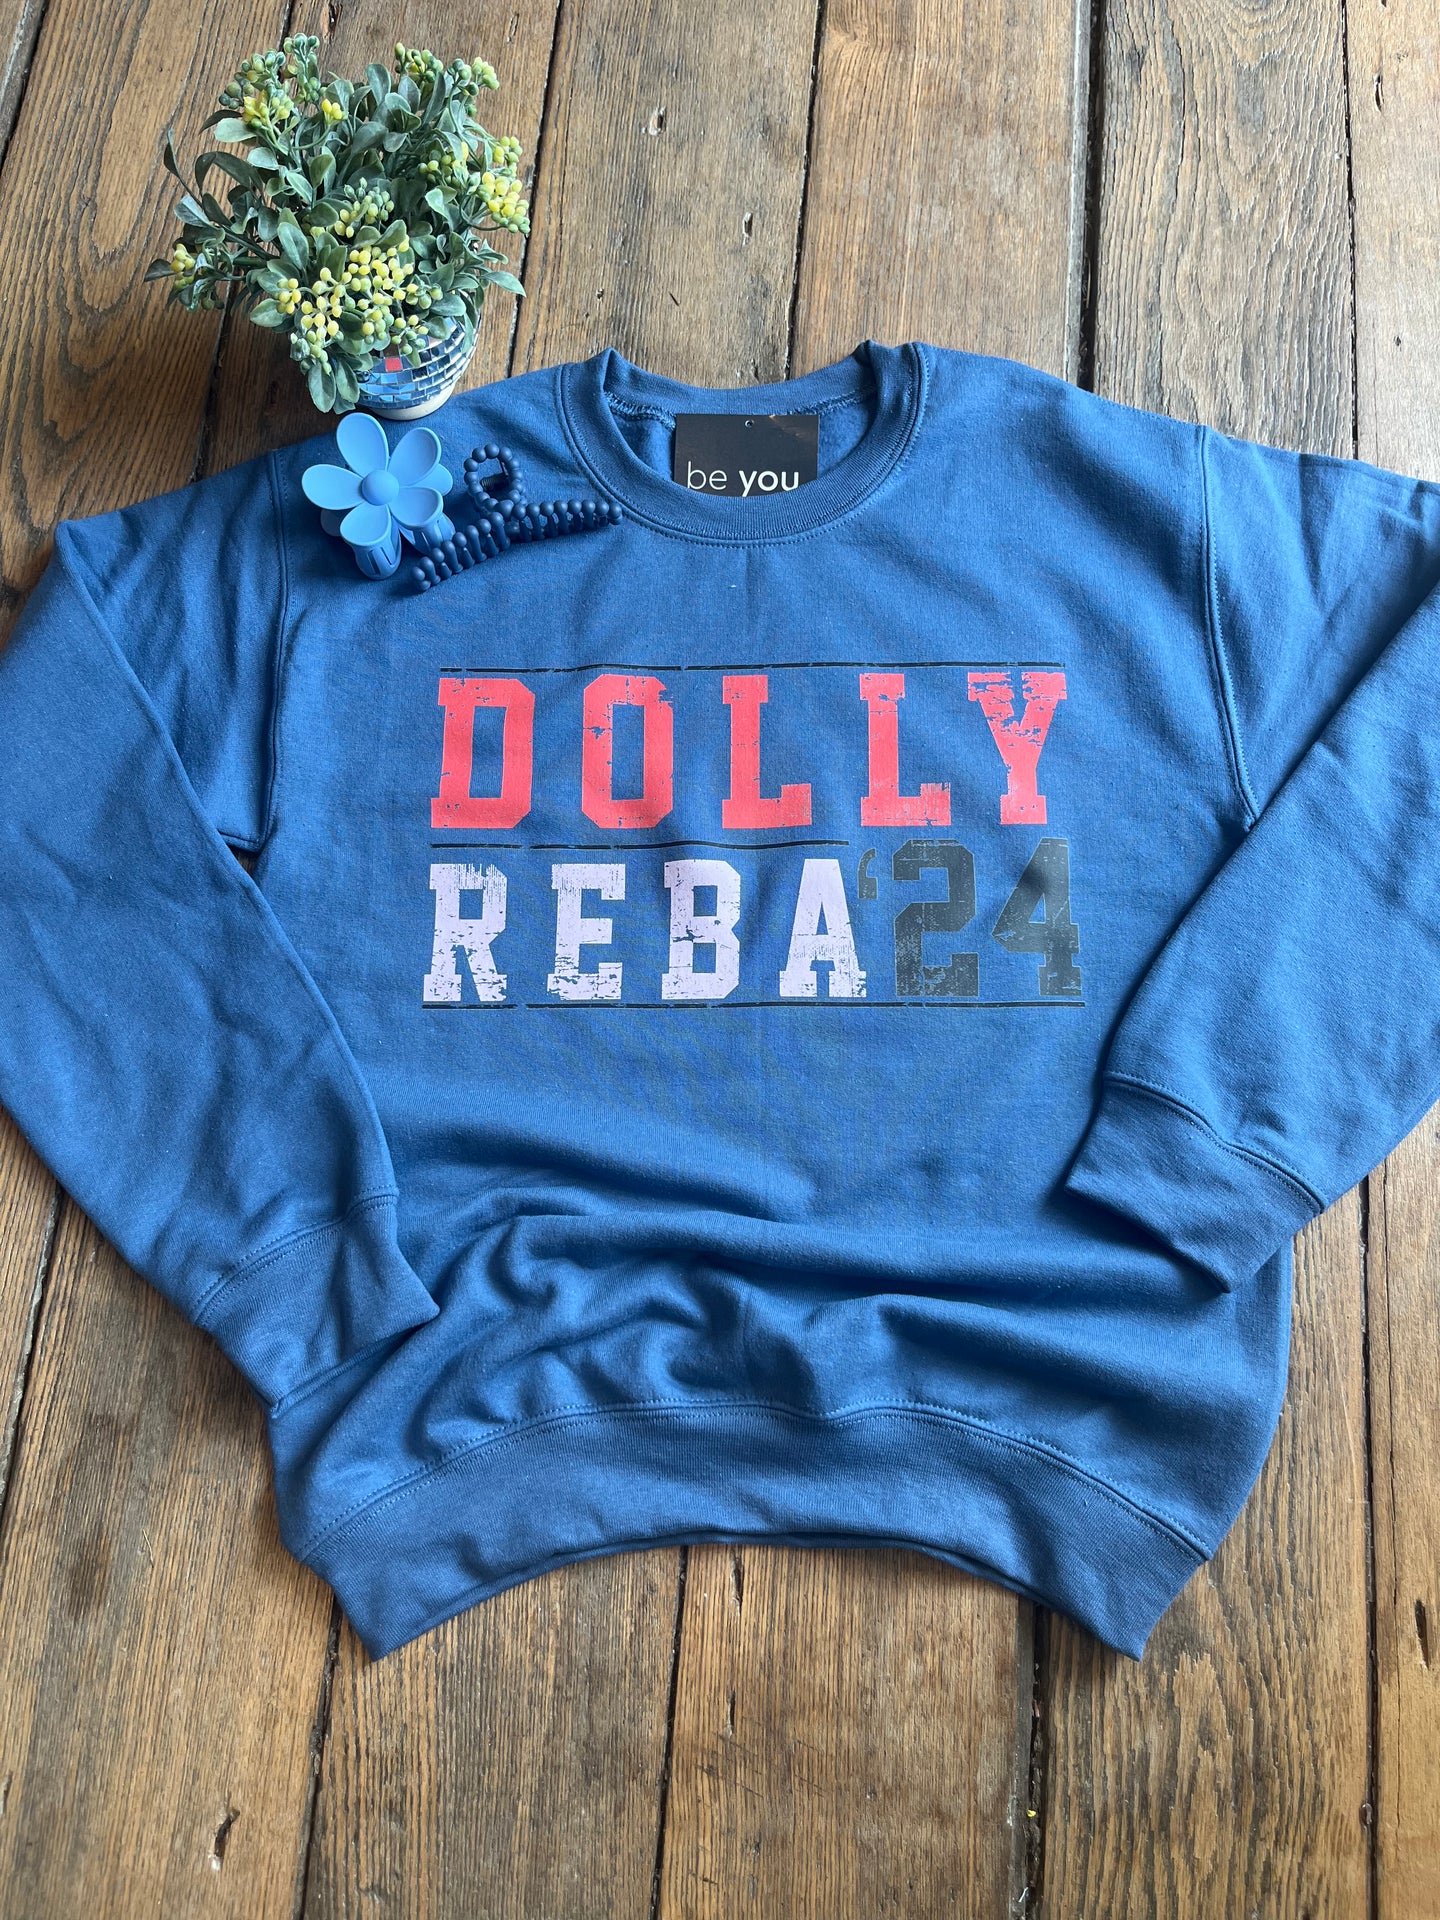 Reba + Dolly ‘24